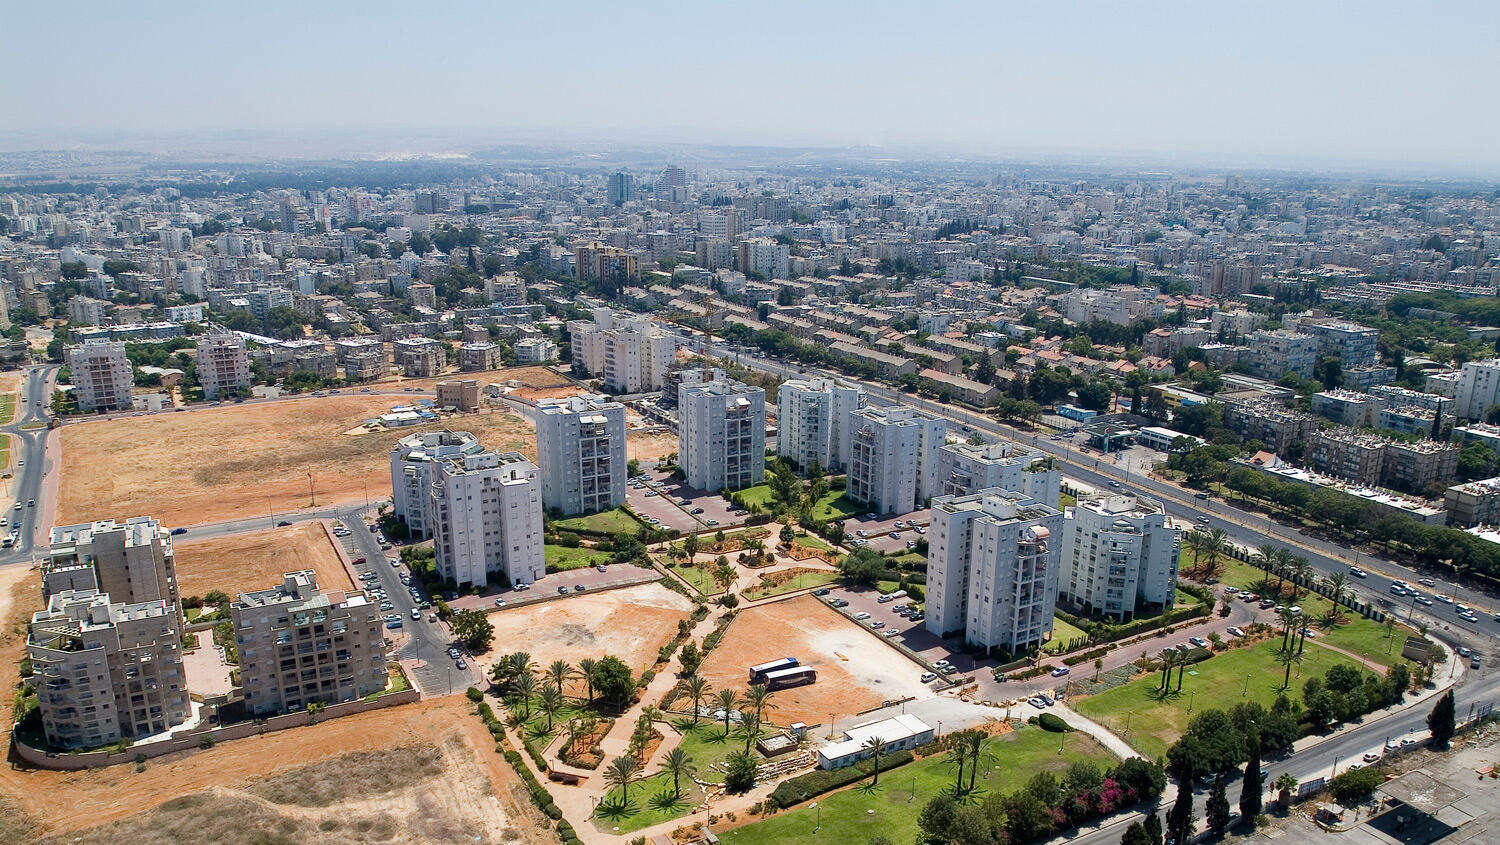 באר יעקב-העיר שקיבלה את התואר "העיר המבוקשת ביותר בישראל"